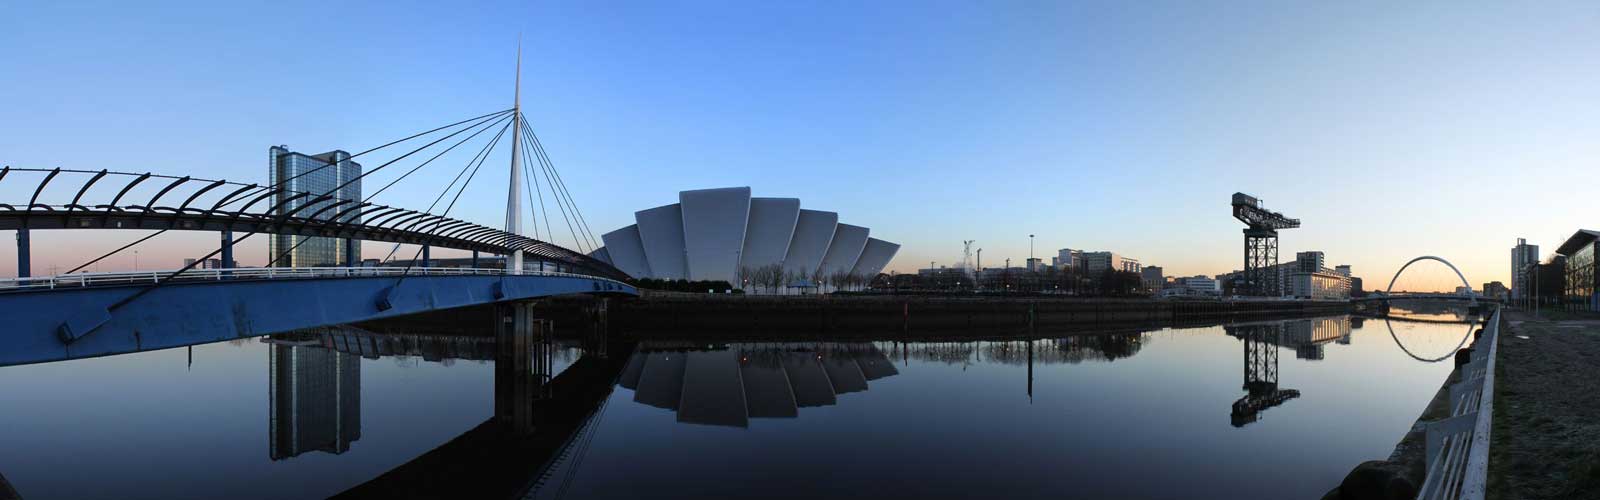 Glasgow reflection